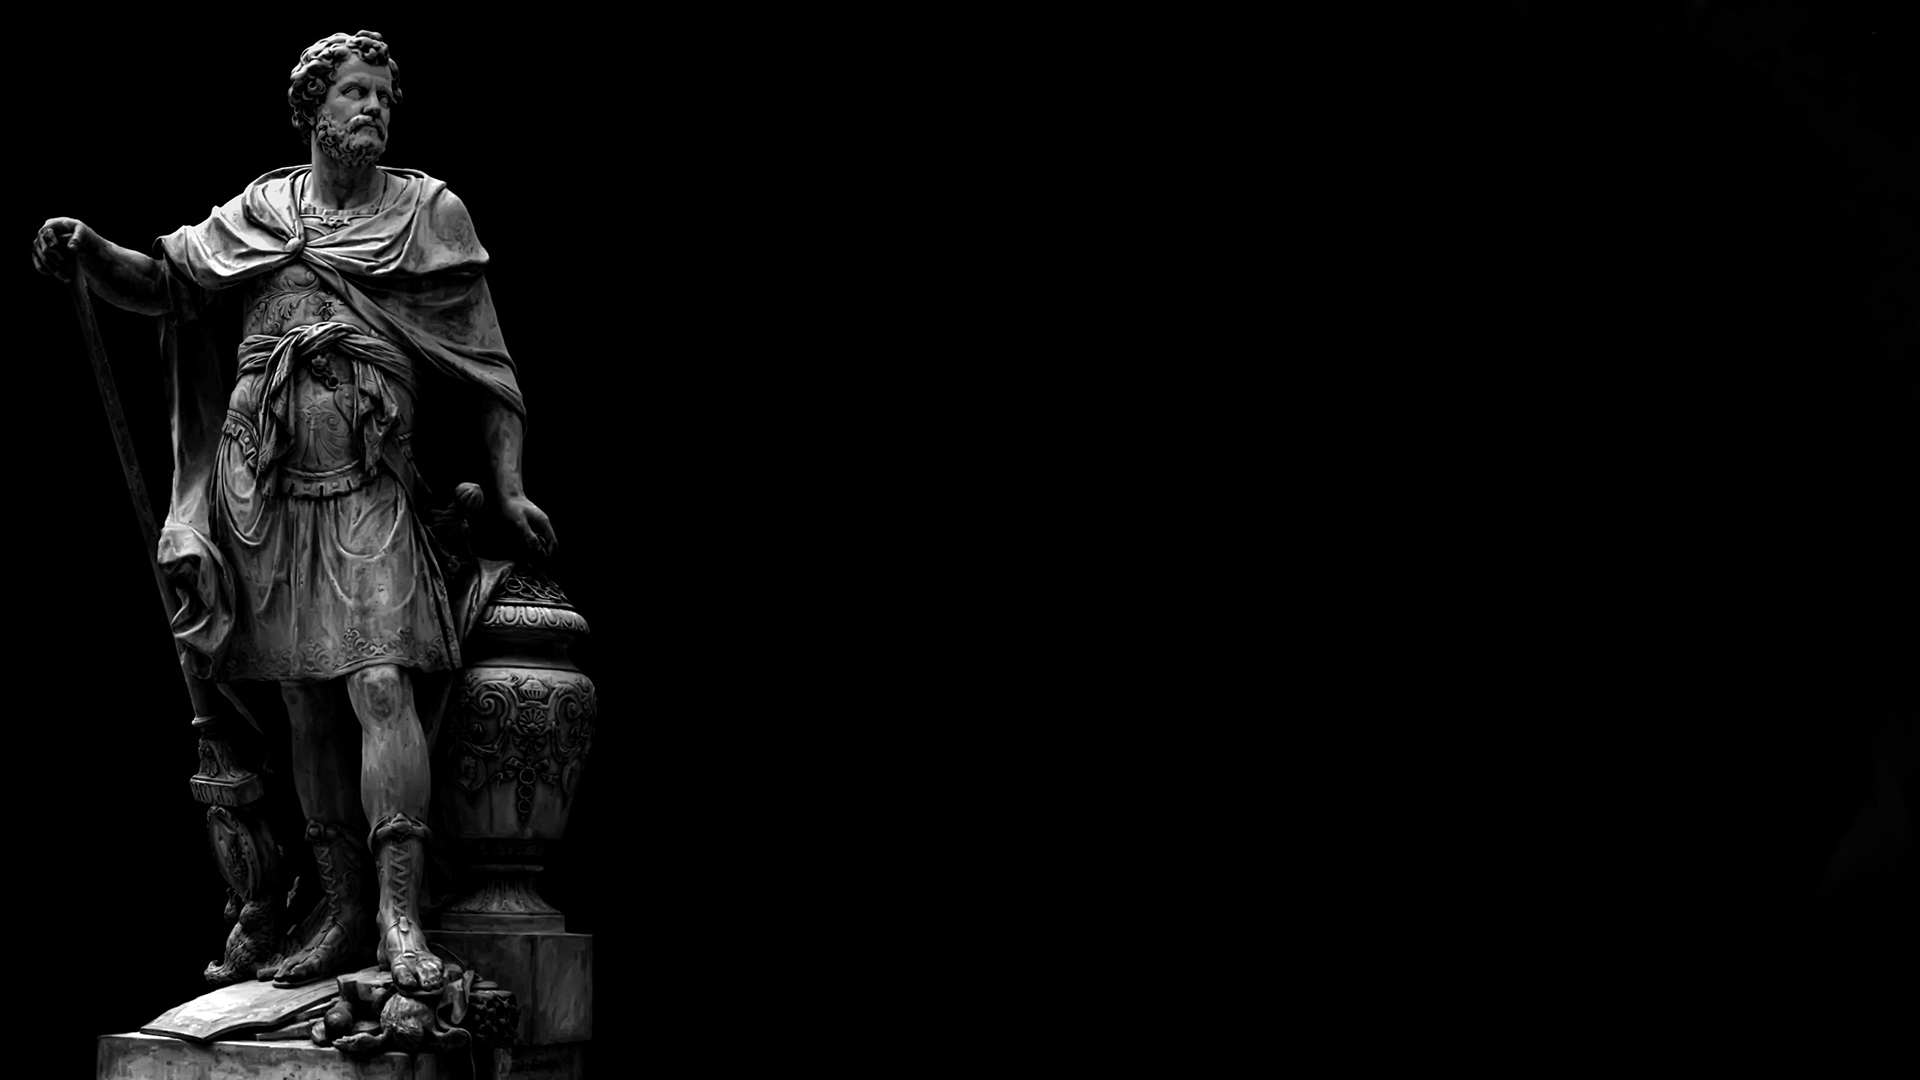 General 1920x1080 statue dark Ancient Greek sculpture simple background monochrome sculpture